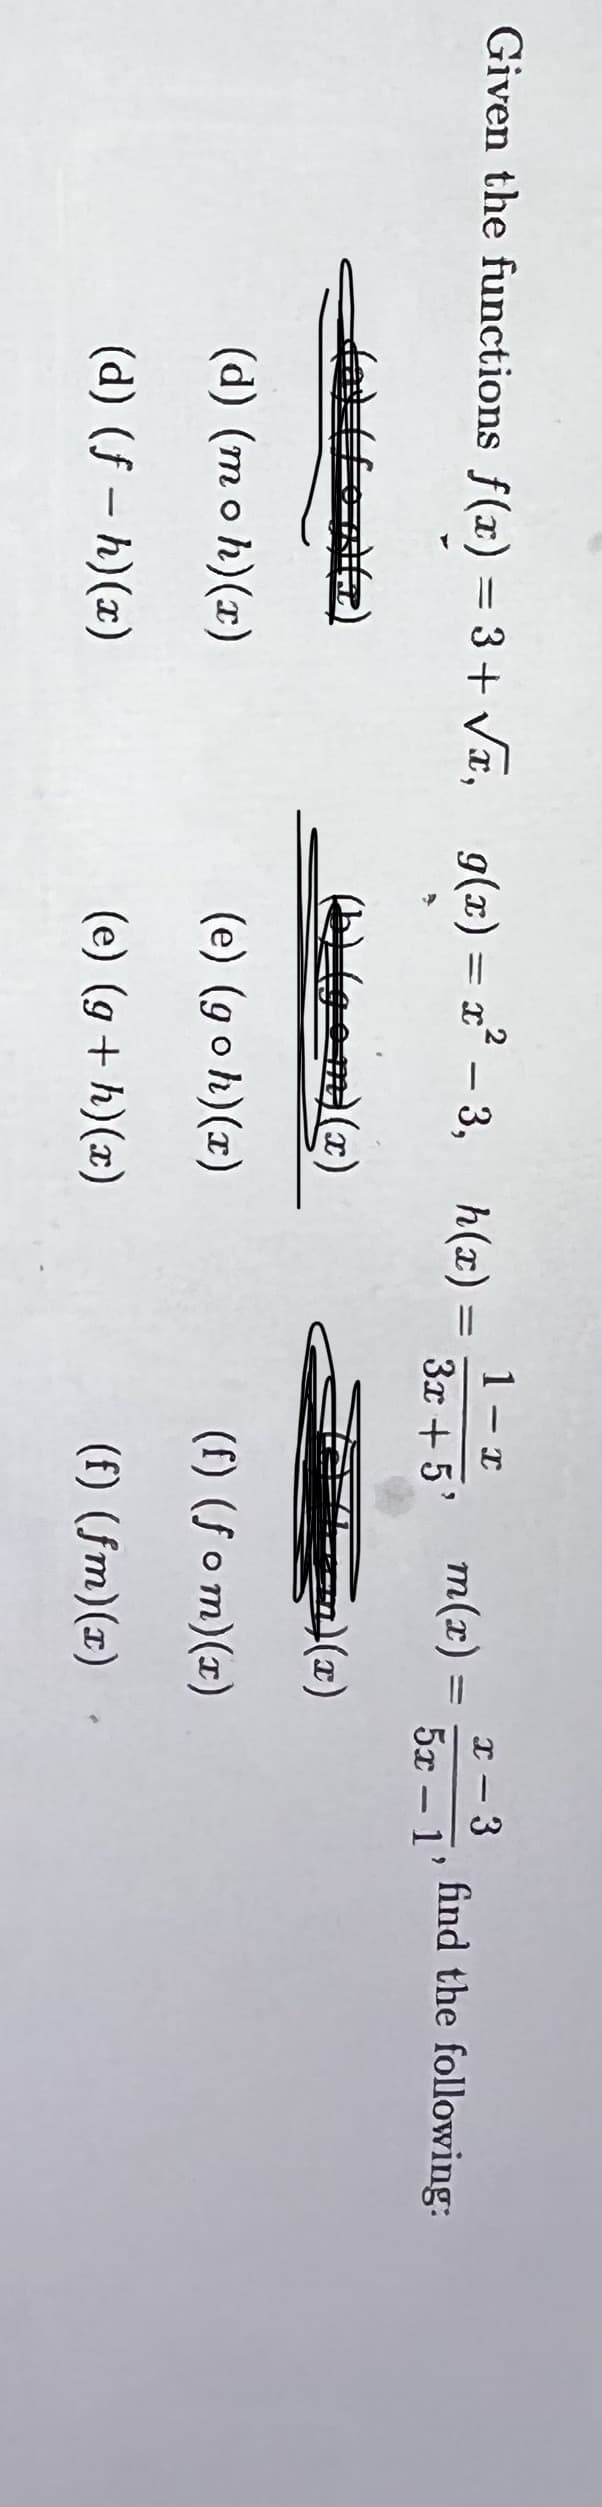 Given the functions f(x) = 3+ Vx, g(x) = x´ - 3,
1 - x
I - 3
|
m(x) =
find the following:
|
3x + 5'
5x – 1'
Egem)(x)
(d) (mo h)(x)
(e) (goh)(x)
(f) (f o m)(x)
(d) (f – h)(x)
(e) (g + h)(x)
(f) (fm)(x)
